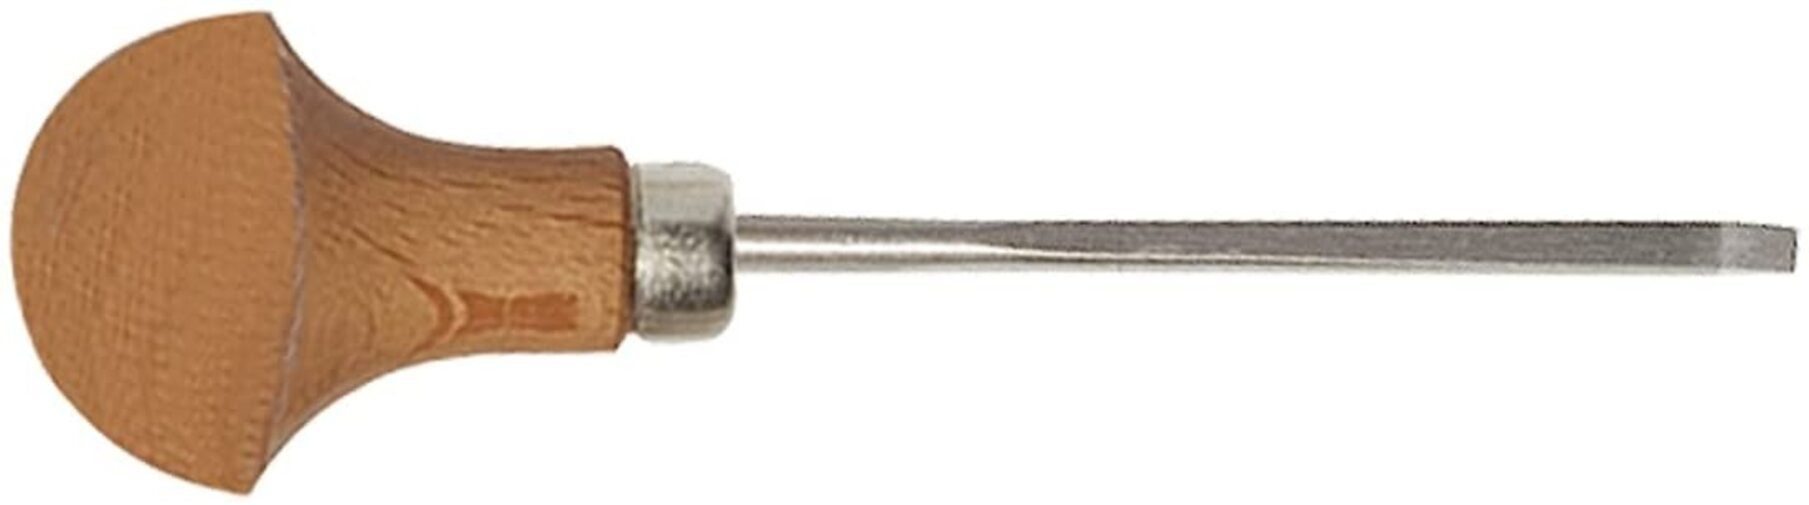 Micro Stechbeitel Stechbeitel 1 mm Stubai STUBAI Form 3